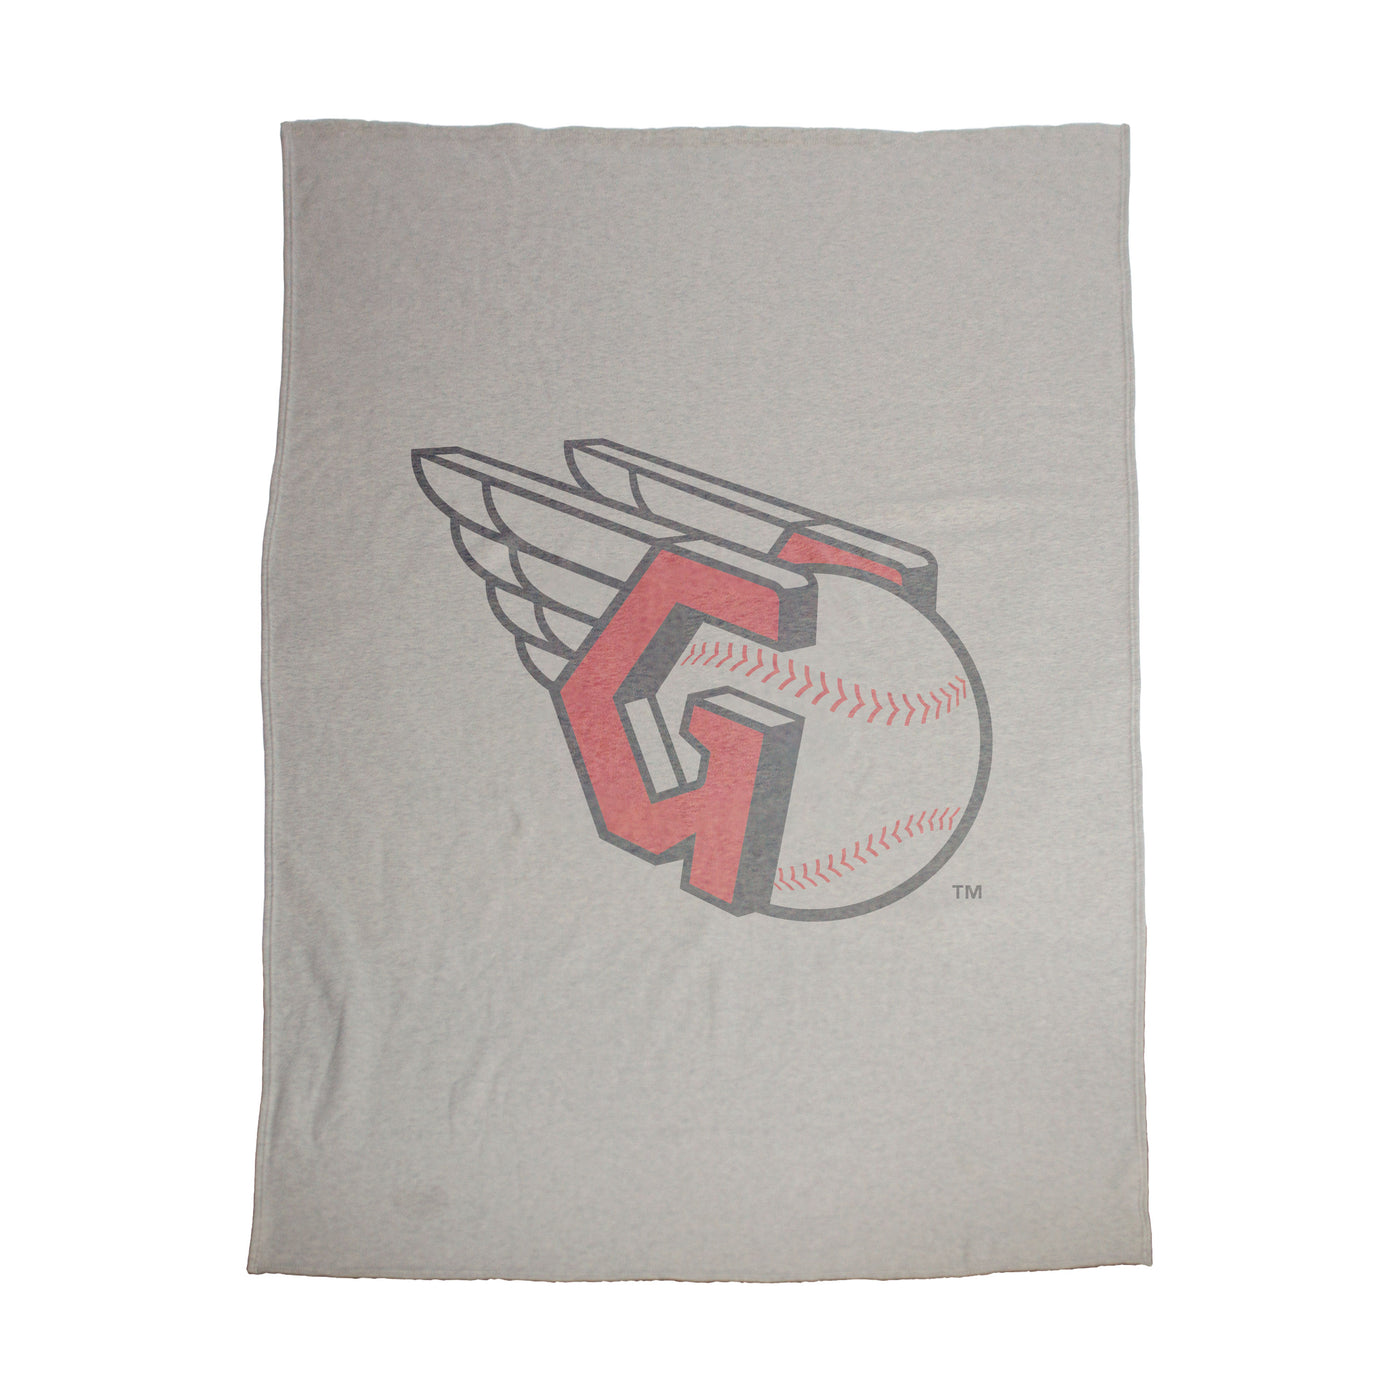 Cleveland Guardians Oversized Logo Sublimated Sweatshirt Blanket